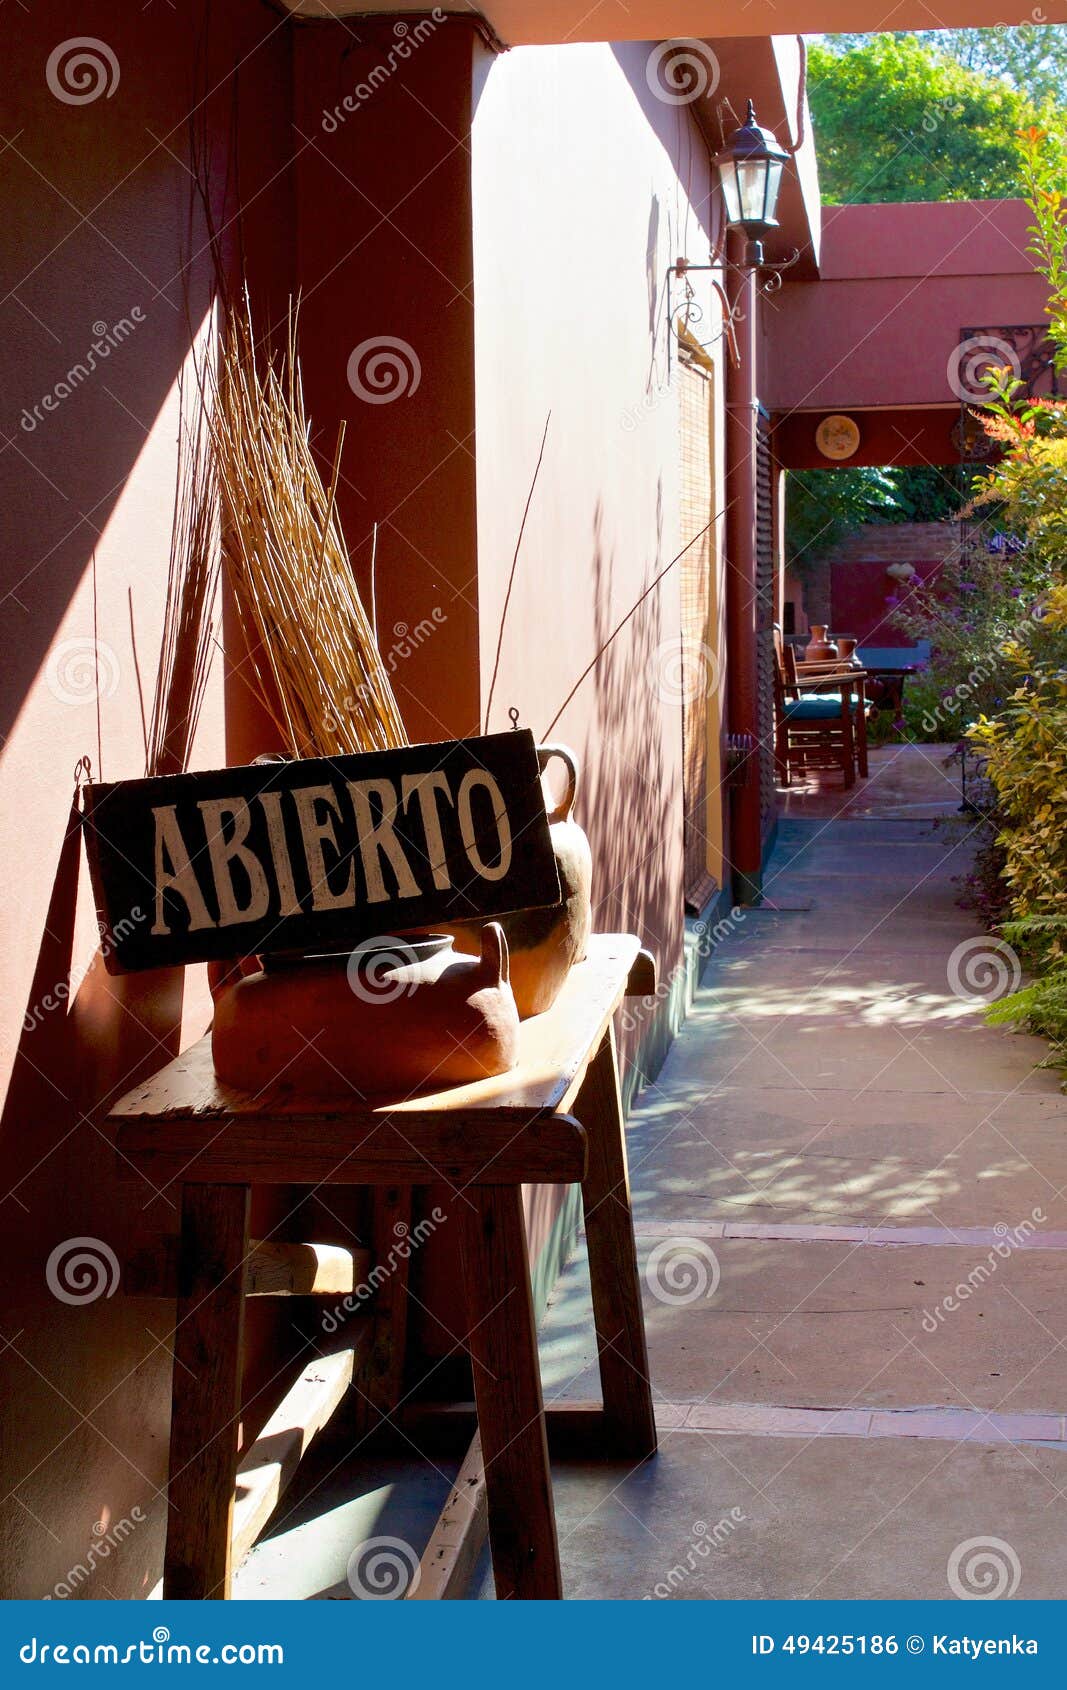 abierto or open sign on shop in san antonio de areco, argentina